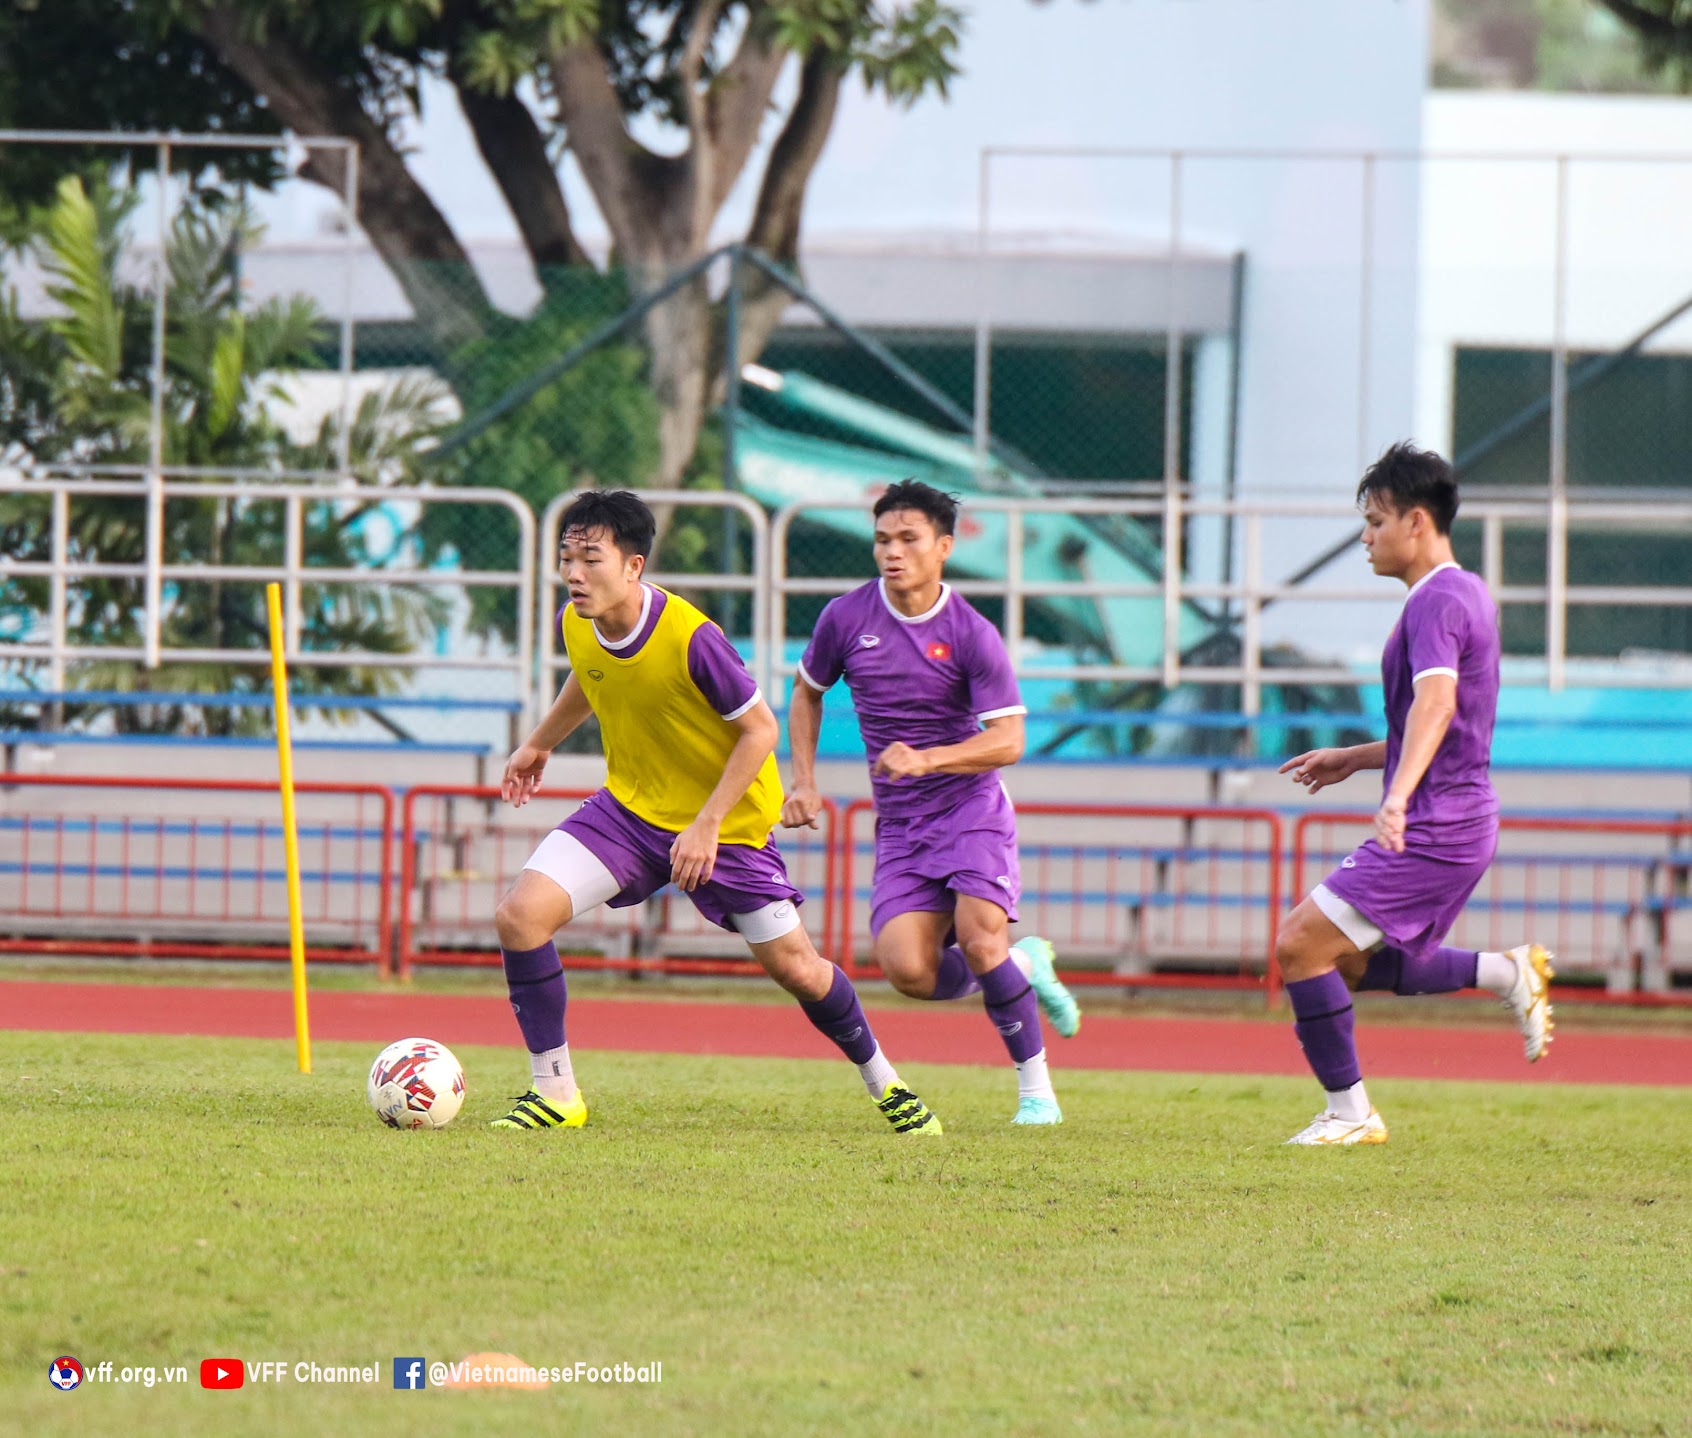 HLV Park Hang-seo yêu cầu tuyển Việt Nam dồn tổng lực giành chiến thắng trước Campuchia - Ảnh 6.